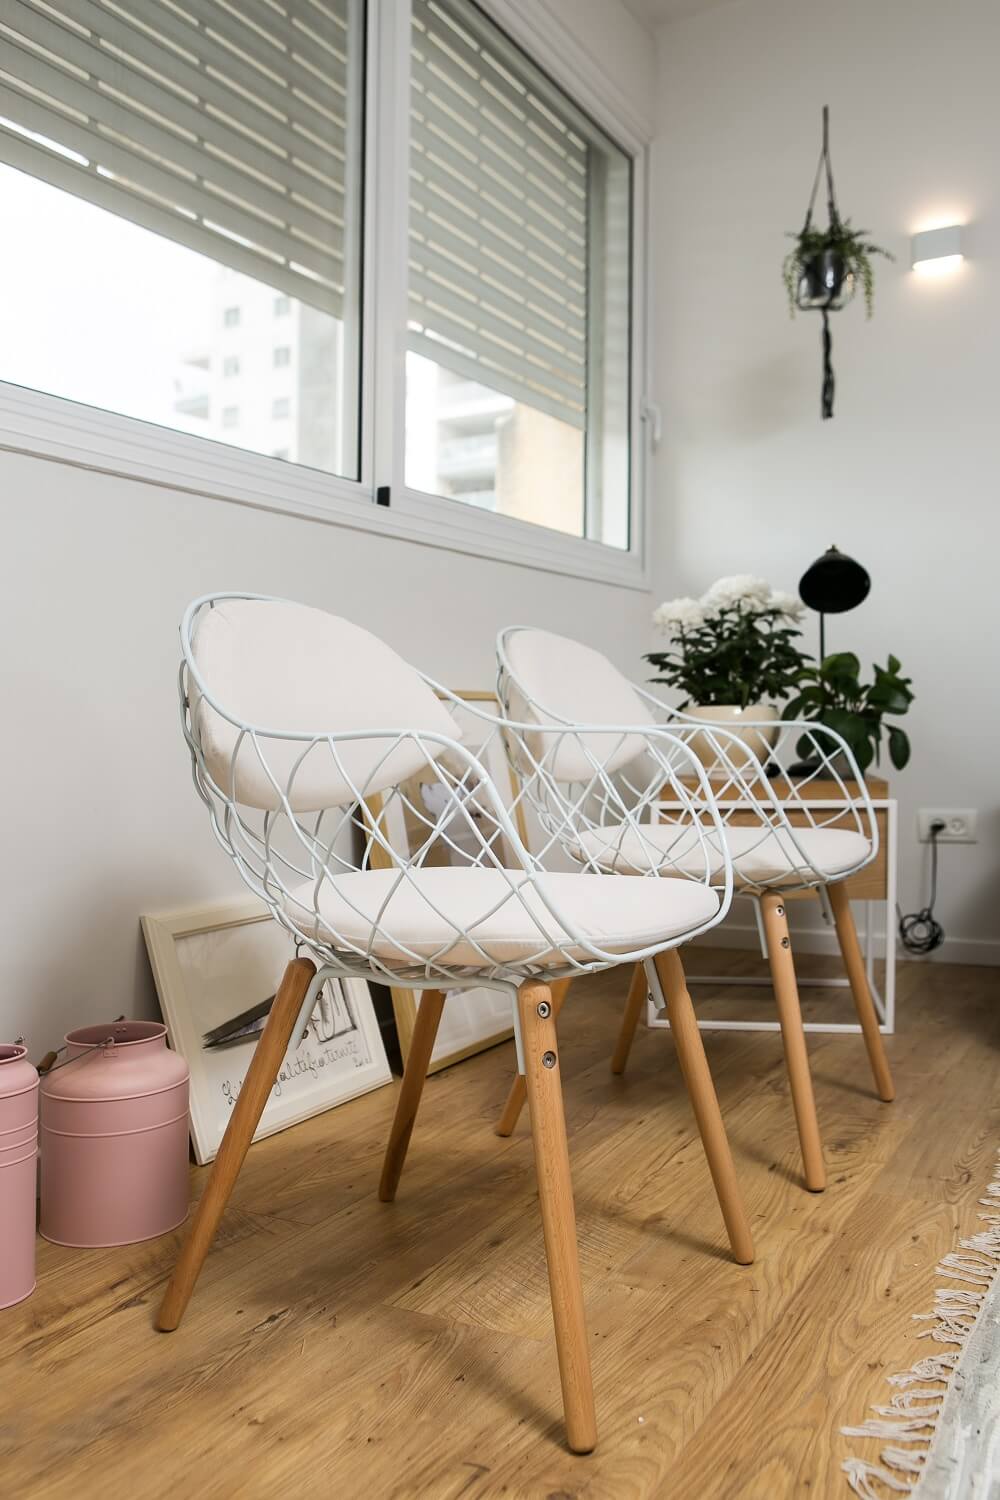 כיסאות לישיבה נוחה בסלון בסגנון נורדי סקנדינבי